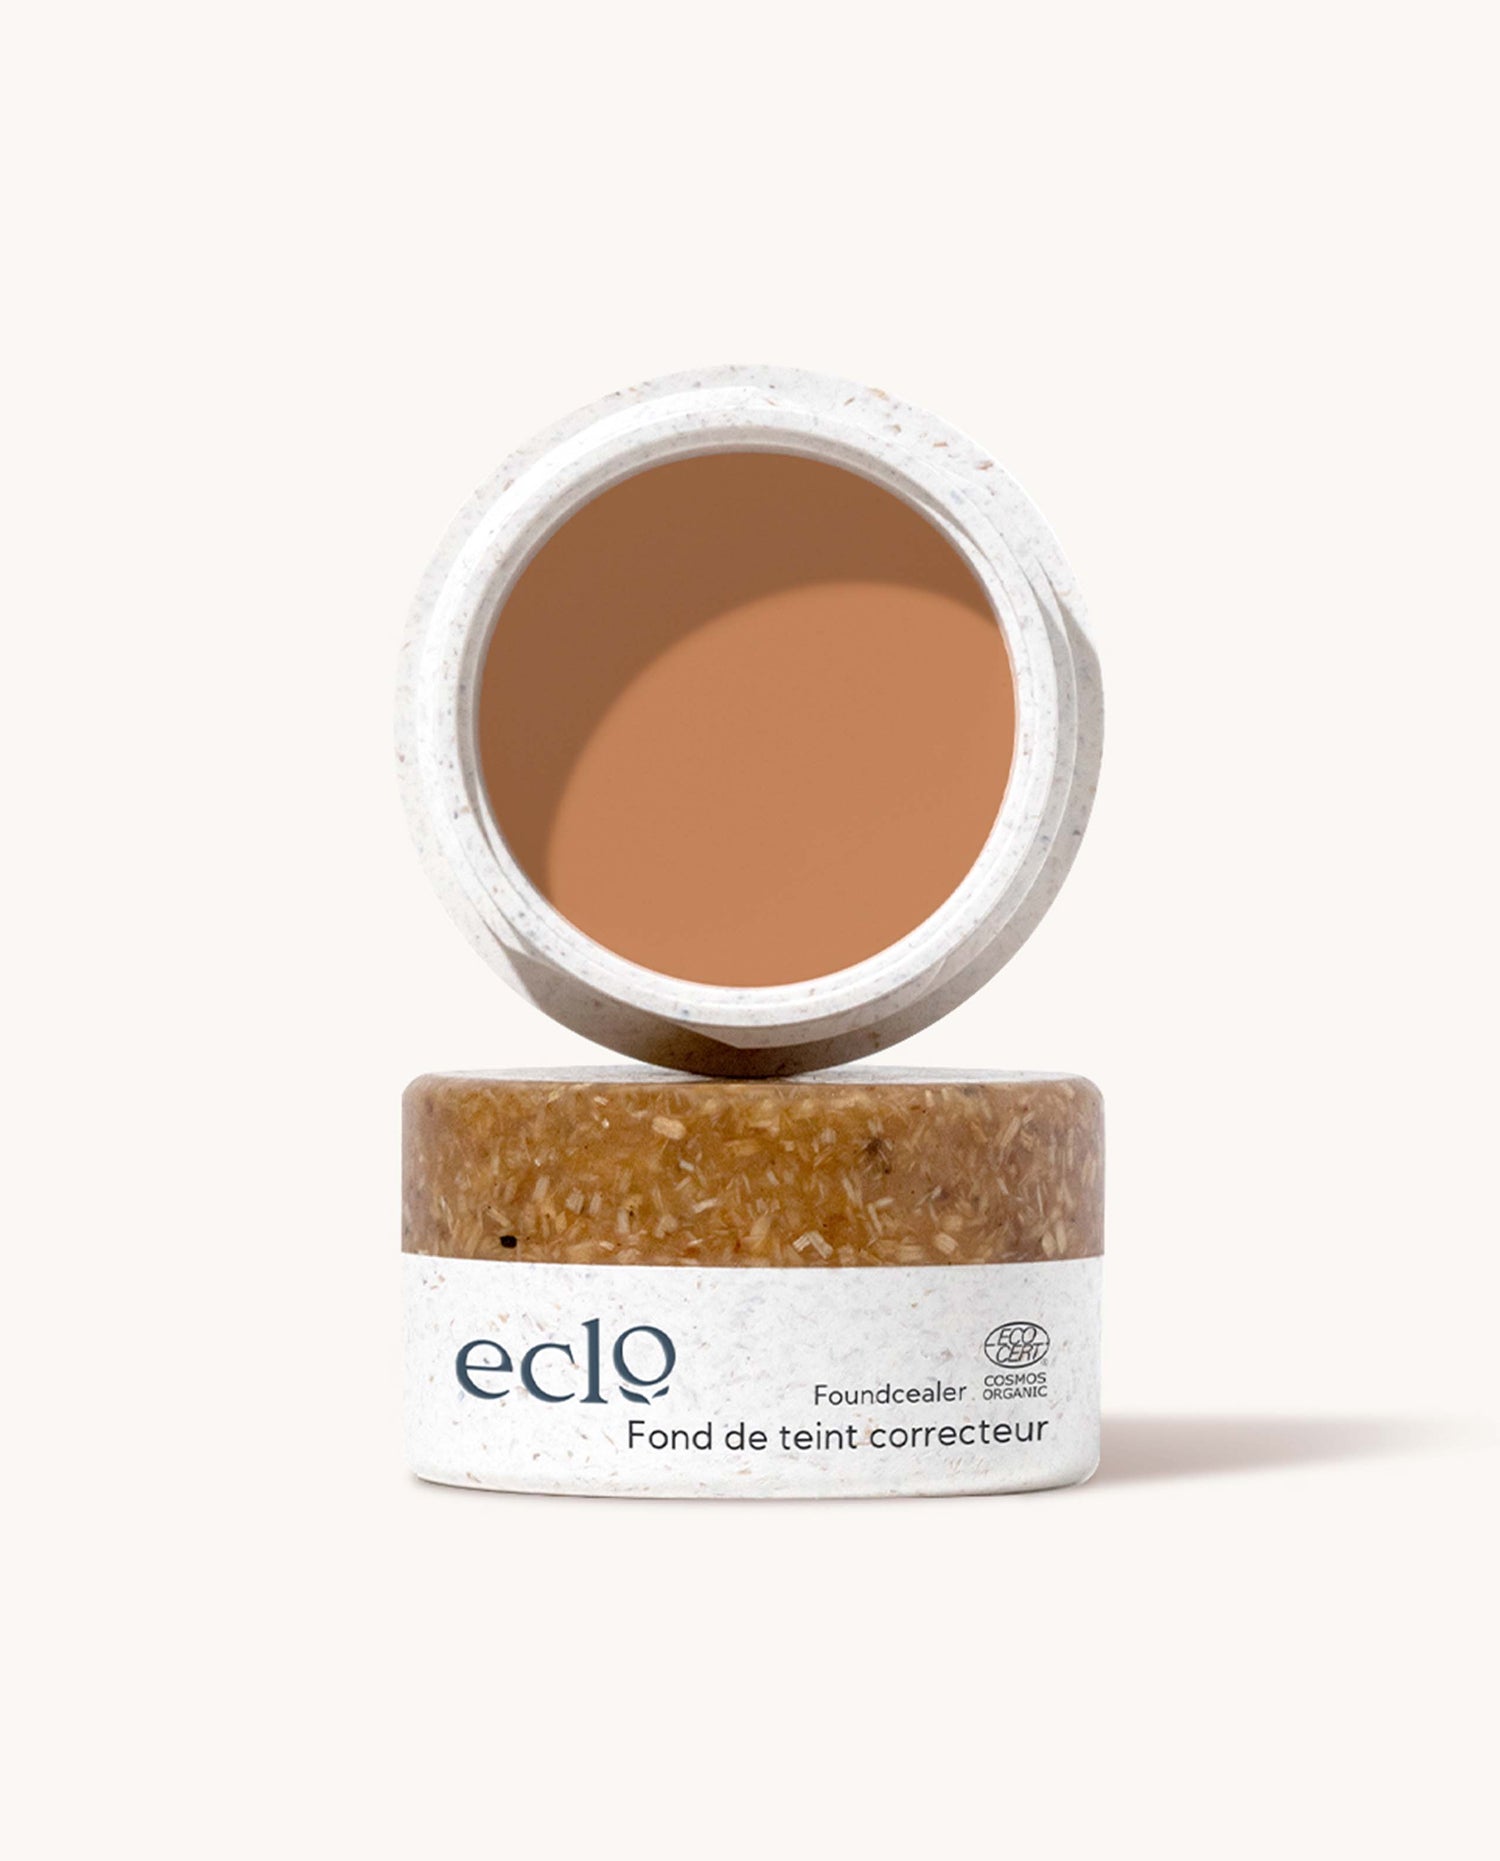 marché commun eclo beauté maquillage fond de teint correcteur naturel biologique Made in France zéro-déchet caramel